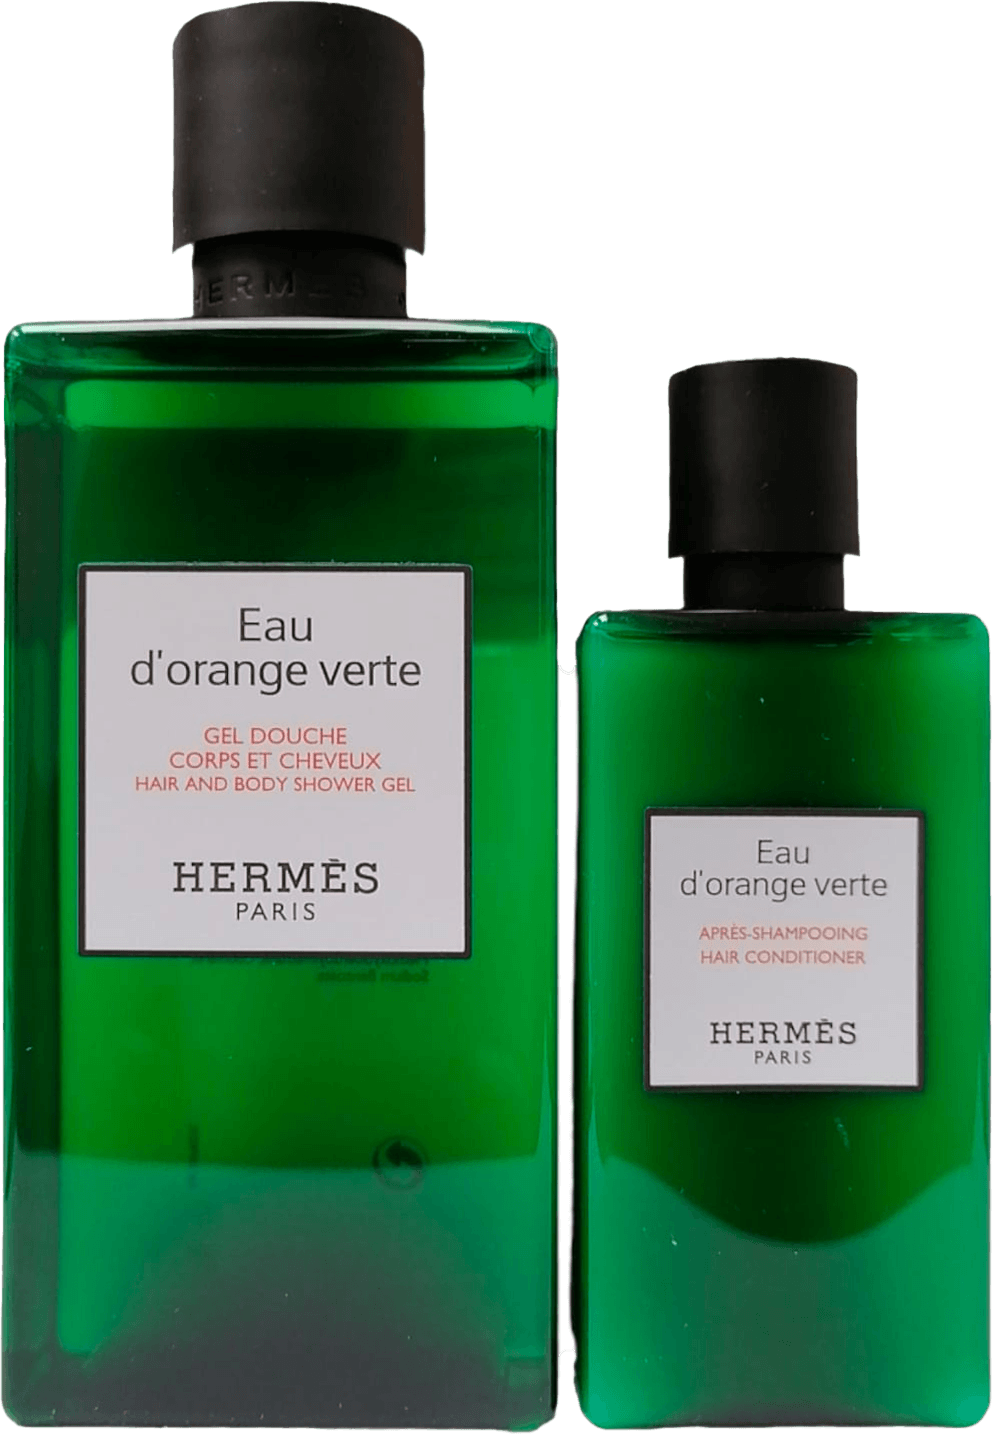 Hermès Eau d’orange verte Body & Hair Caring Set 200+80ml Exp:2024/6 - CC Outlet HK